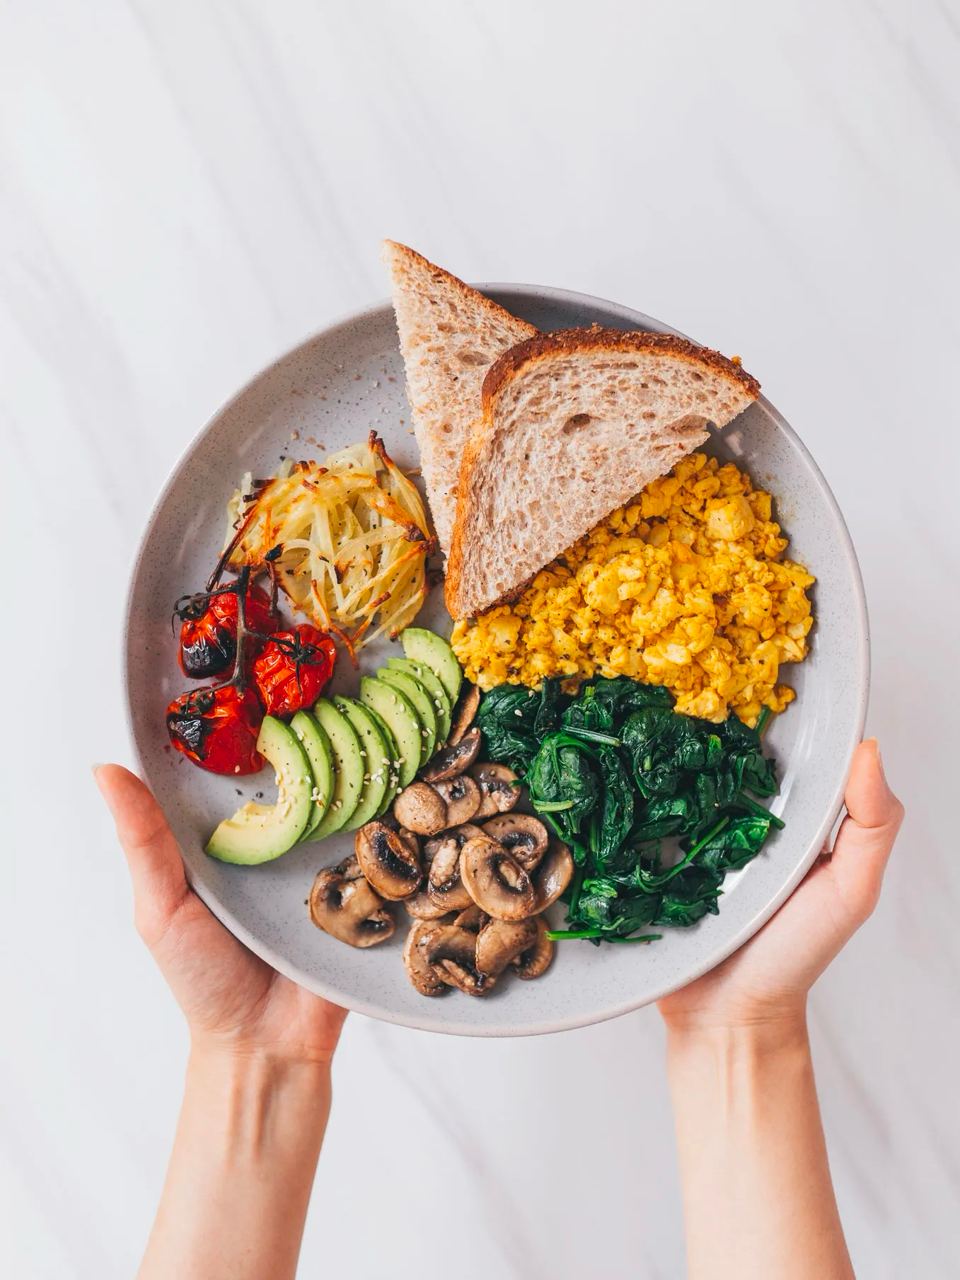 Vegetarian Breakfast Or Brunch Plate